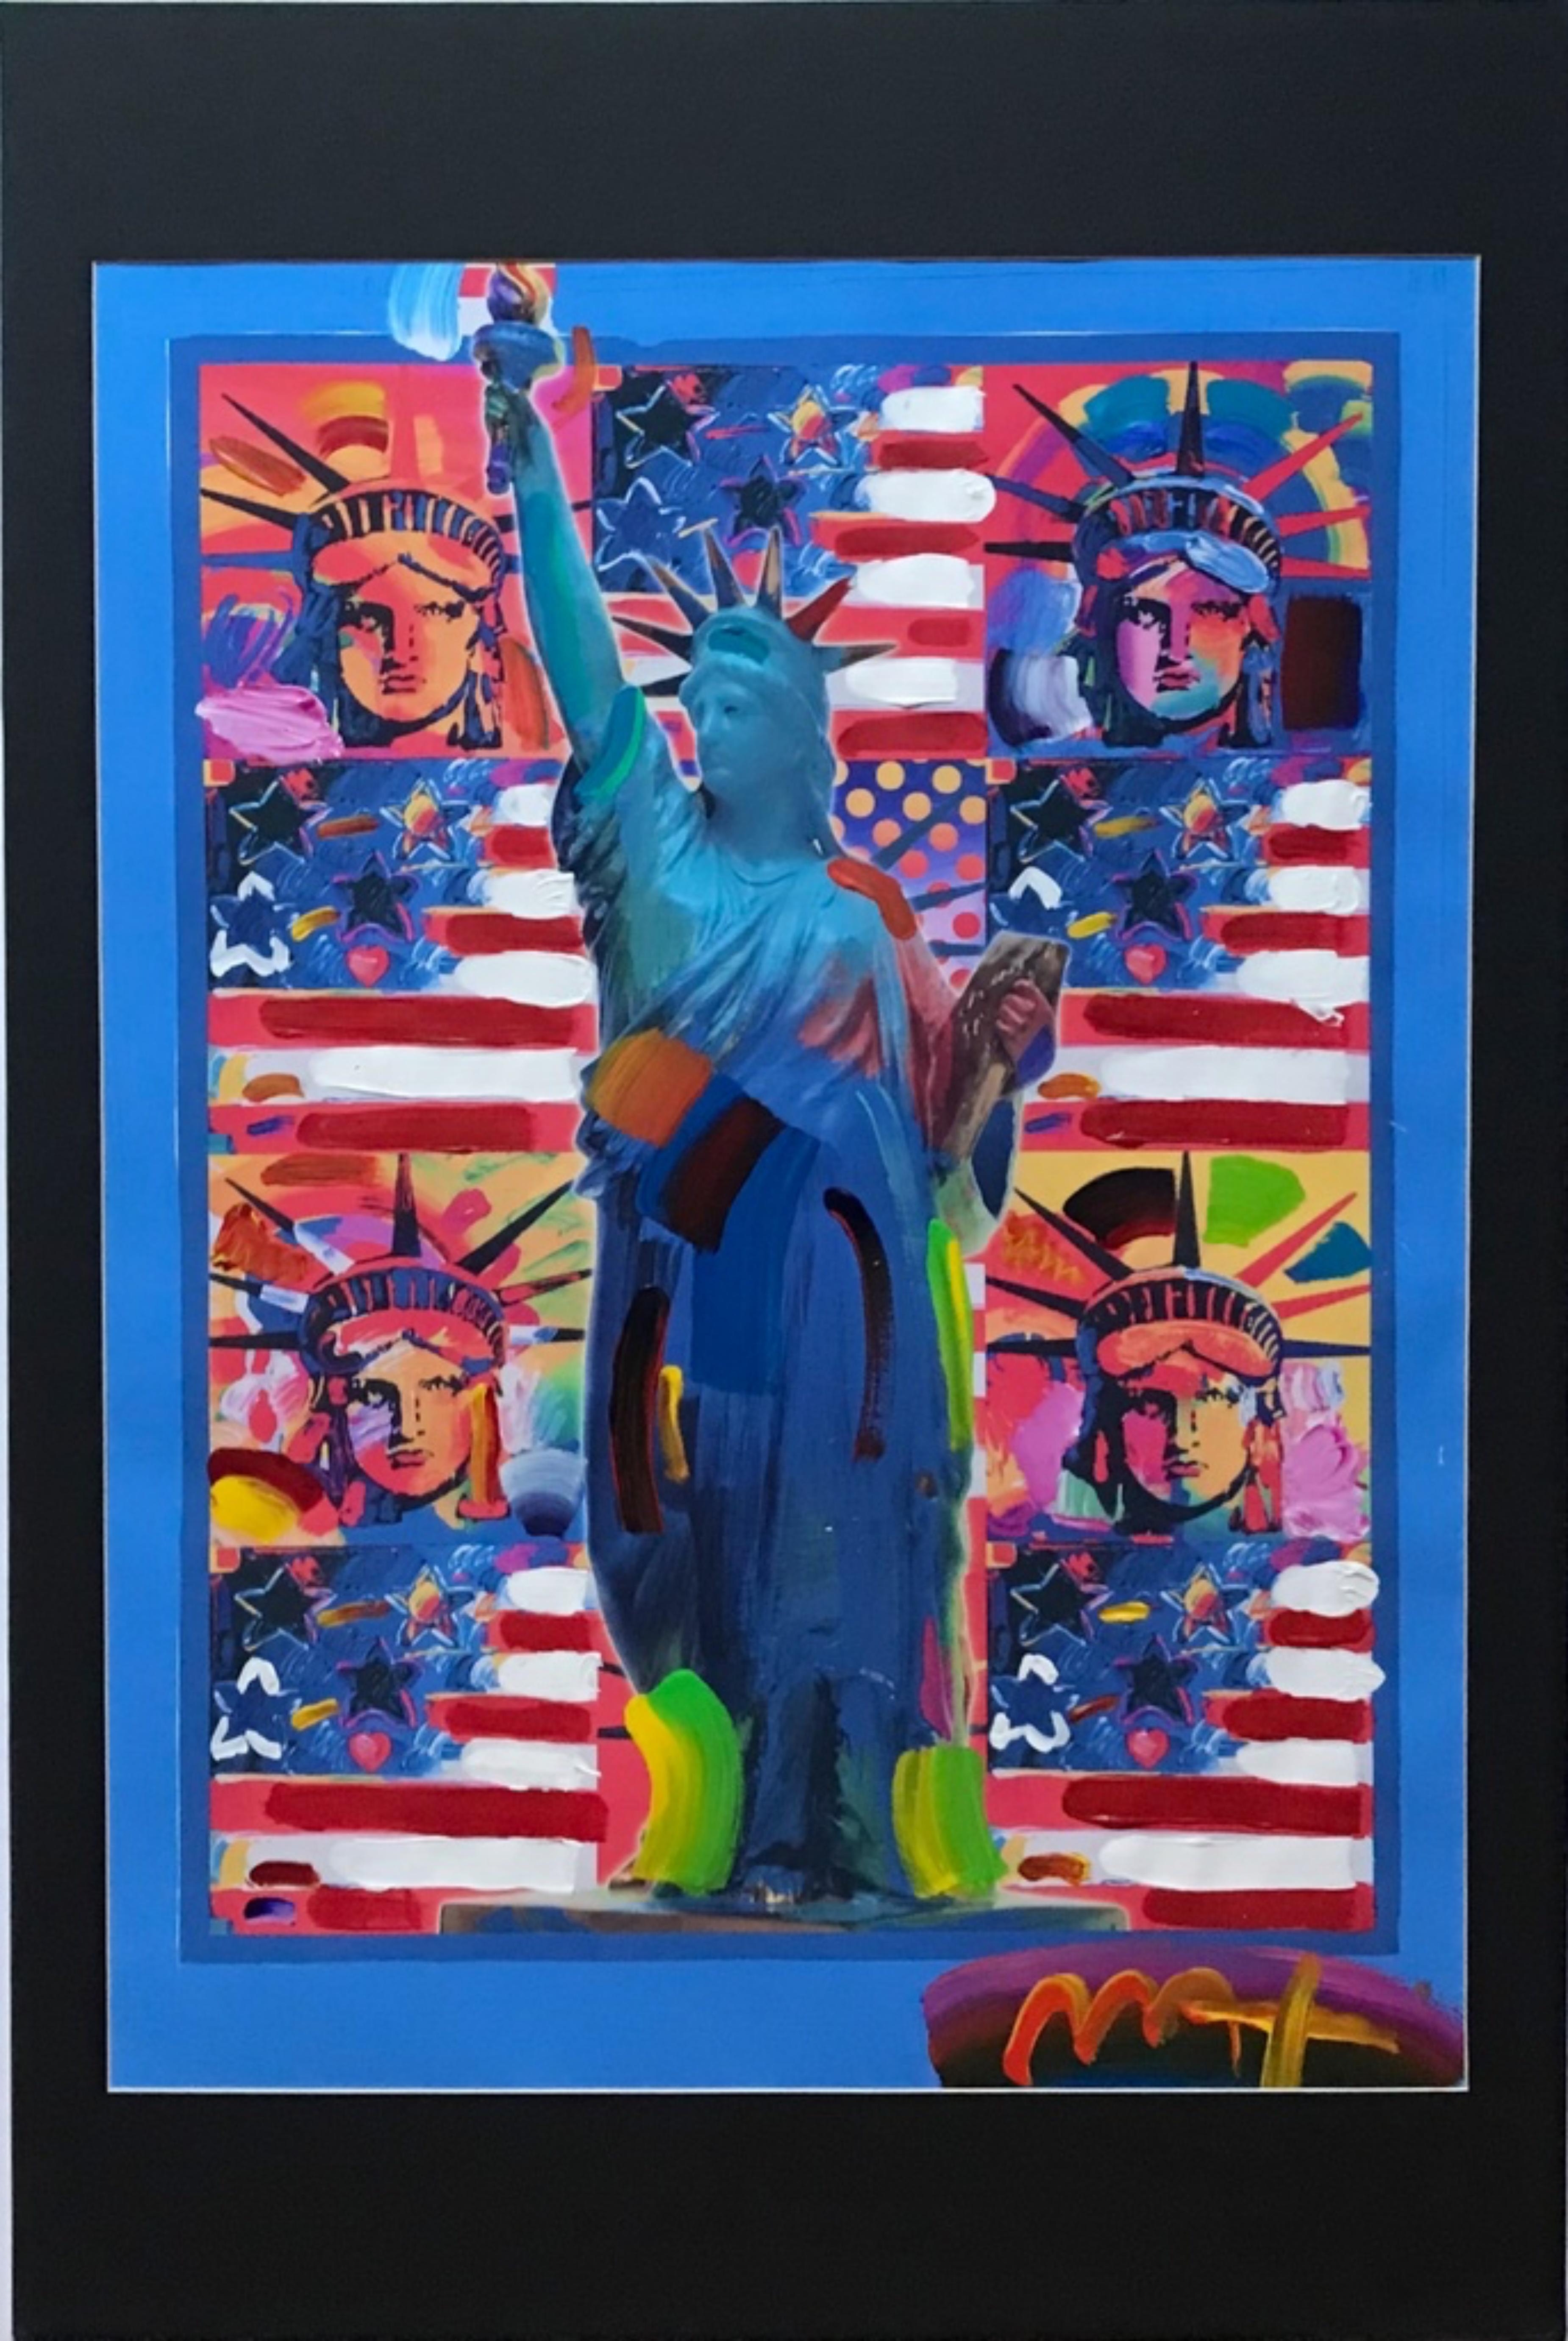 God Bless America II, einzigartiges Gemälde (handsigniert zweimal) mit Freiheitsstatue (Pop-Art), Mixed Media Art, von Peter Max